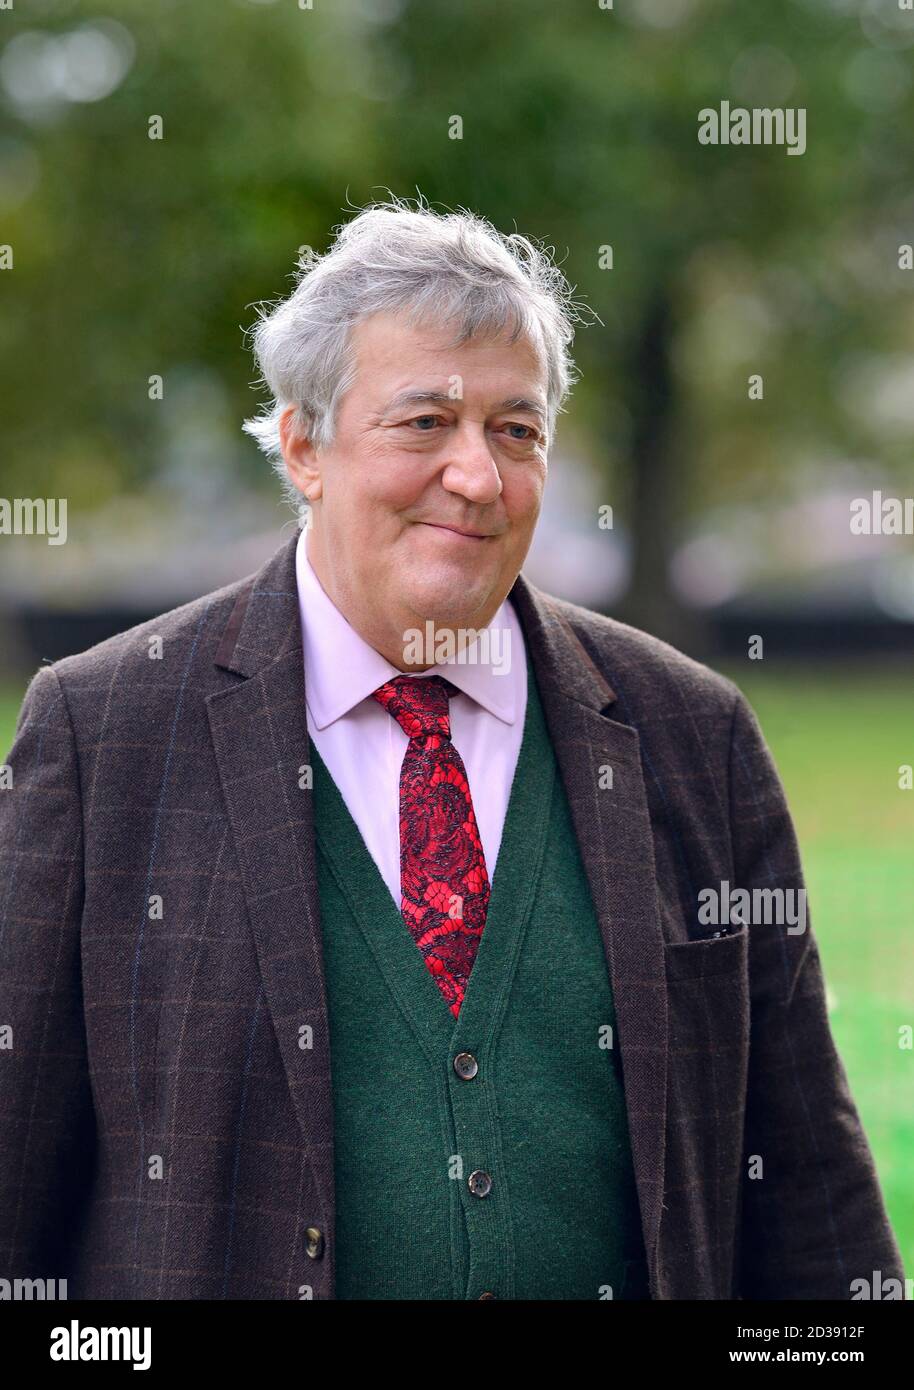 Stephen Fry - acteur, comédien et écrivain - à Westminster après avoir filmé une interview. Octobre 2020 Banque D'Images